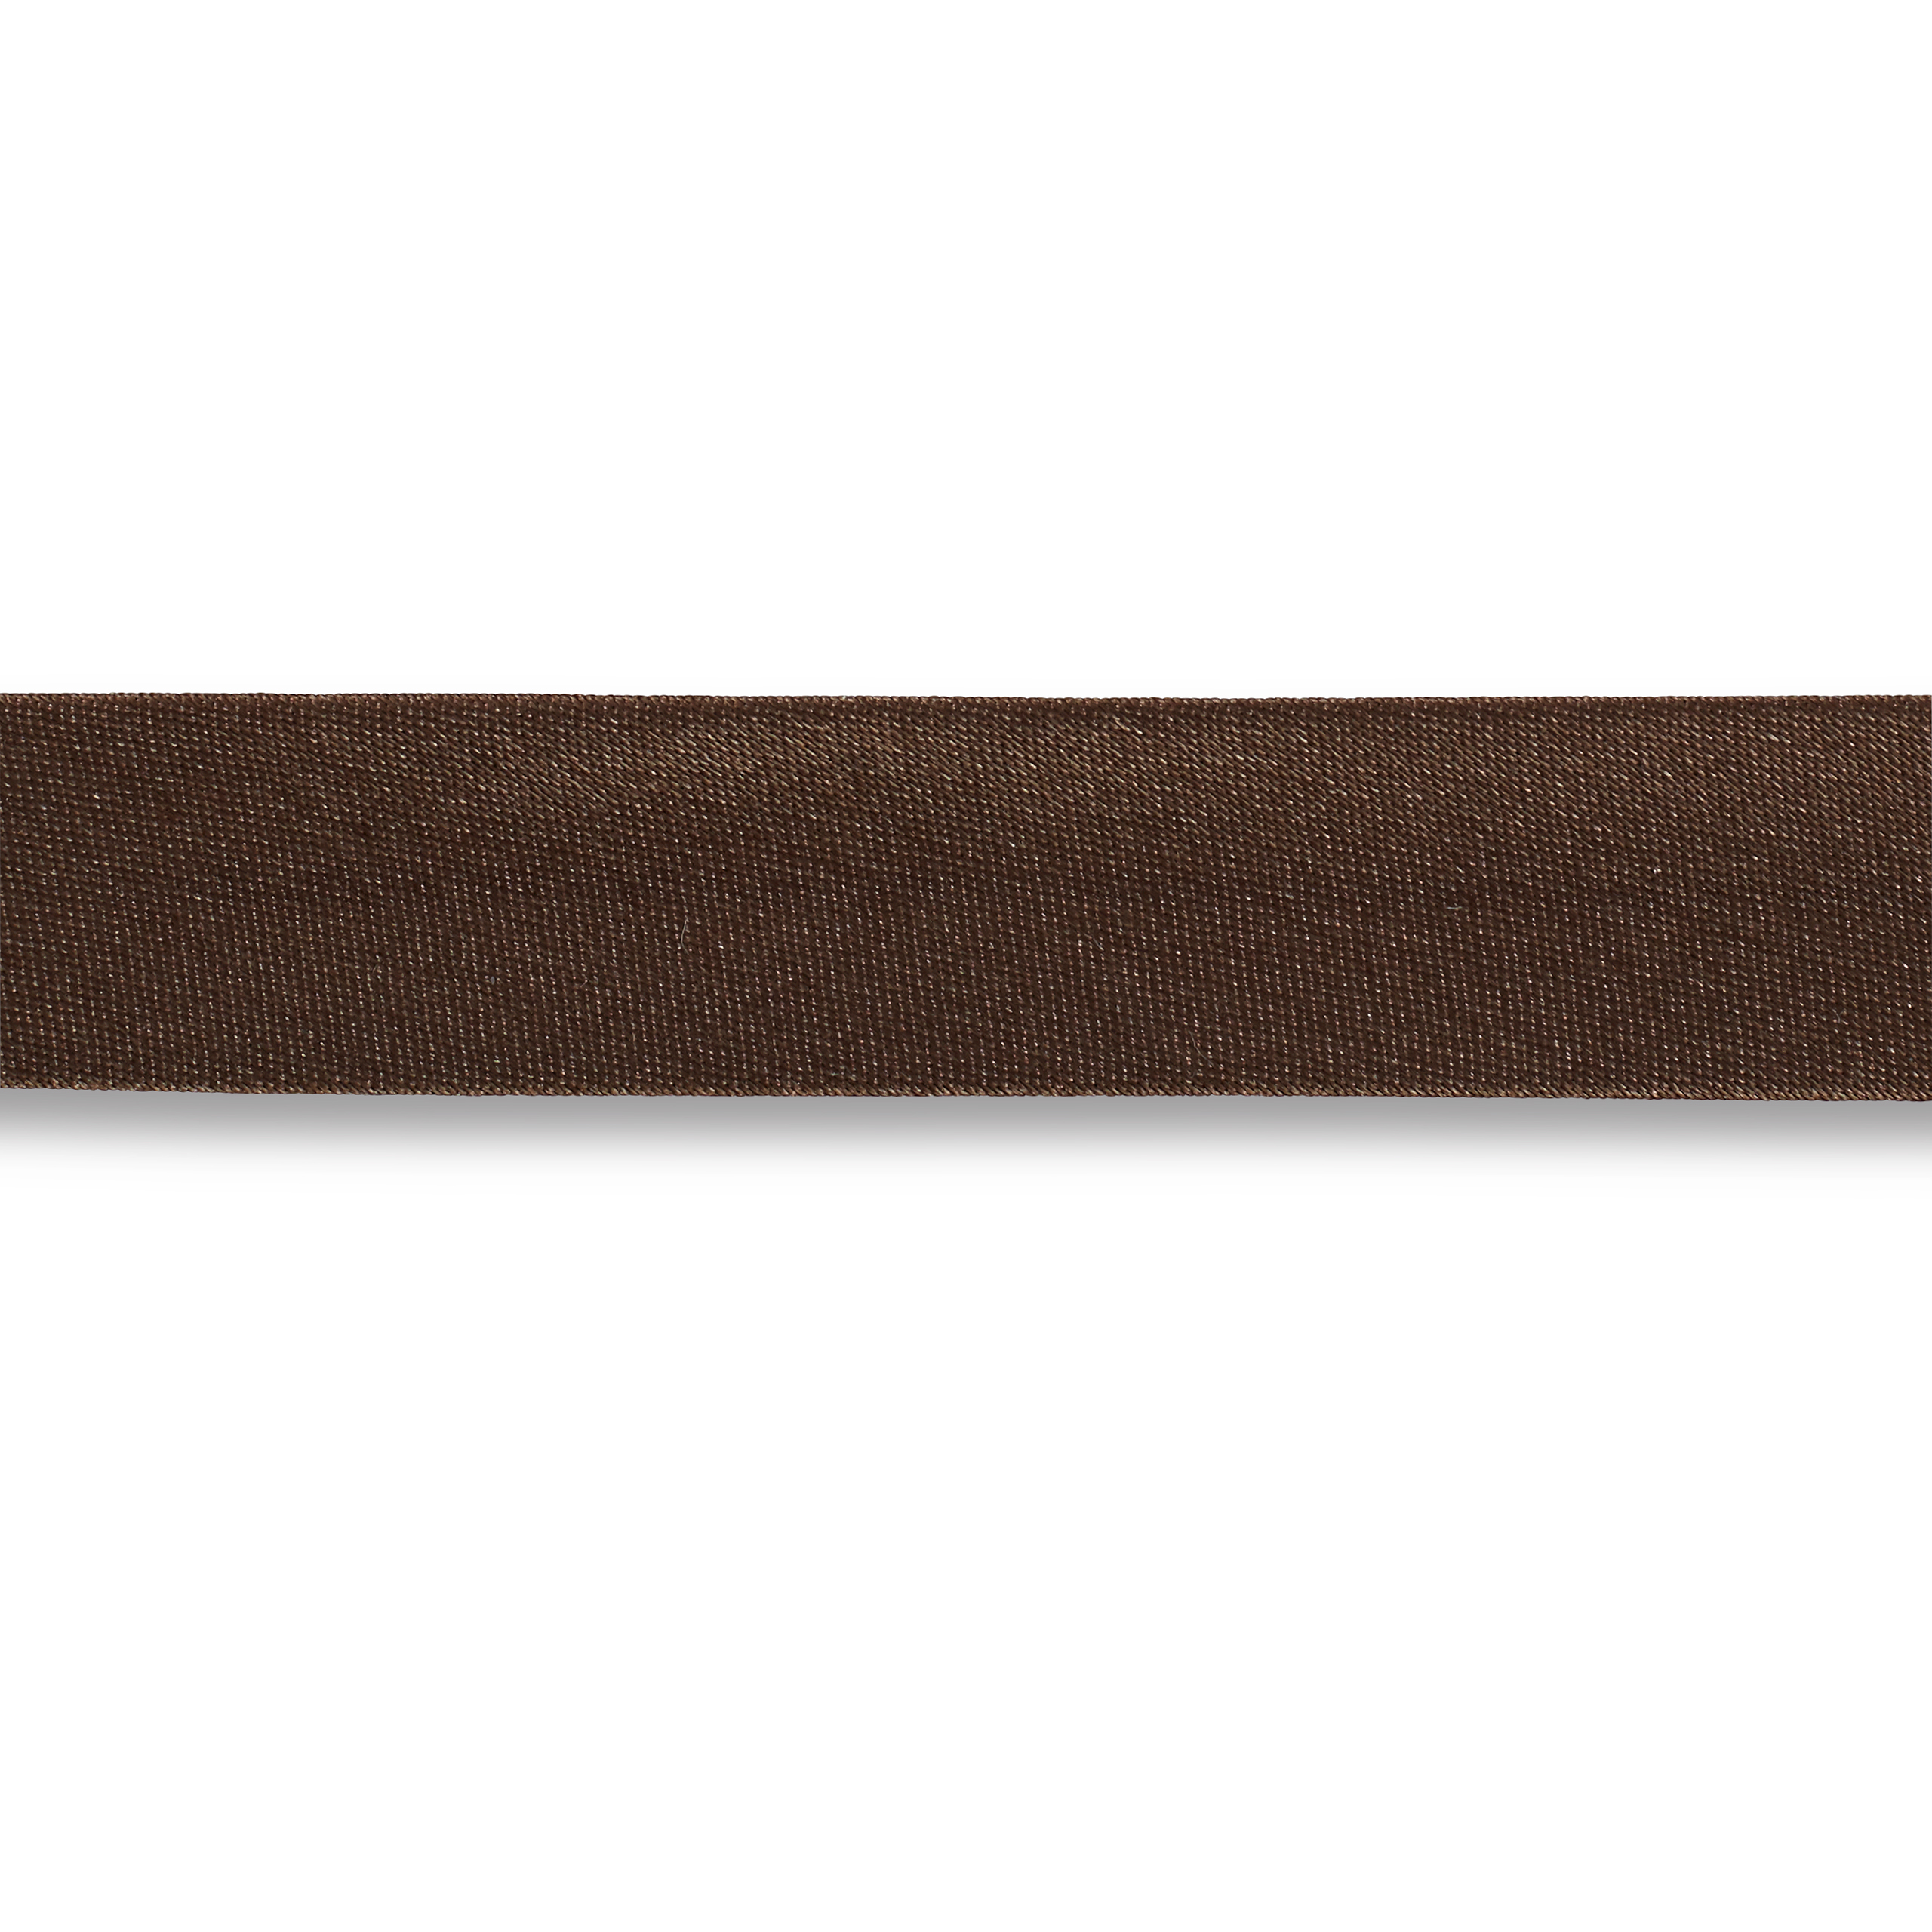 Schrägband Duchesse 40/20 mm dunkelbraun, Meterware, Einfassband 